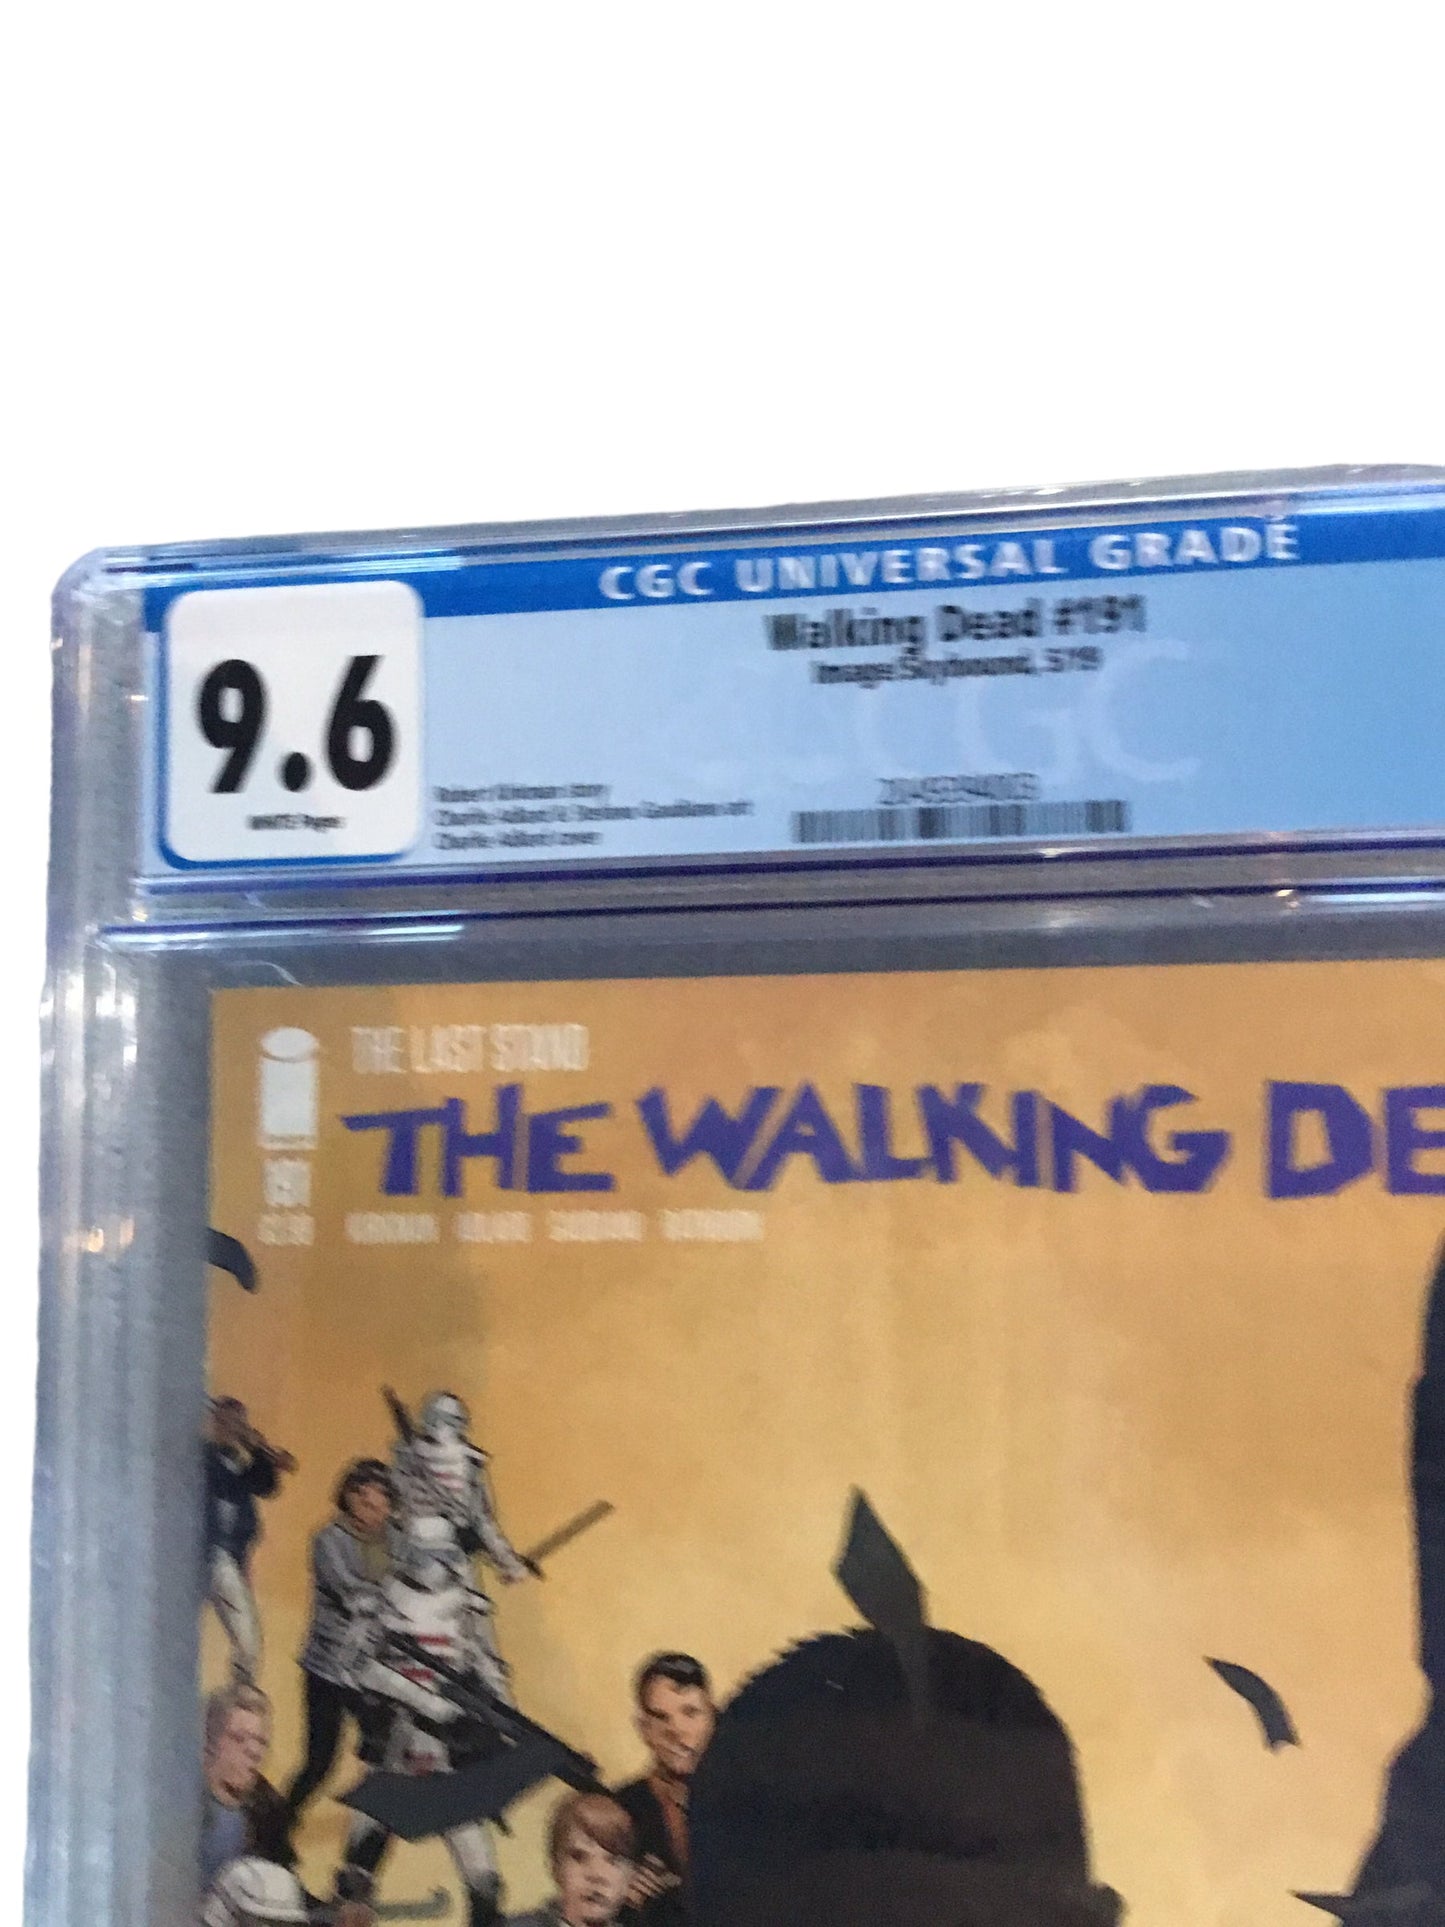 Walking Dead #191 - by Robert Kirkman & Charlie Adlard - IMAGE 2019 - CGC 9.6 (NM+)